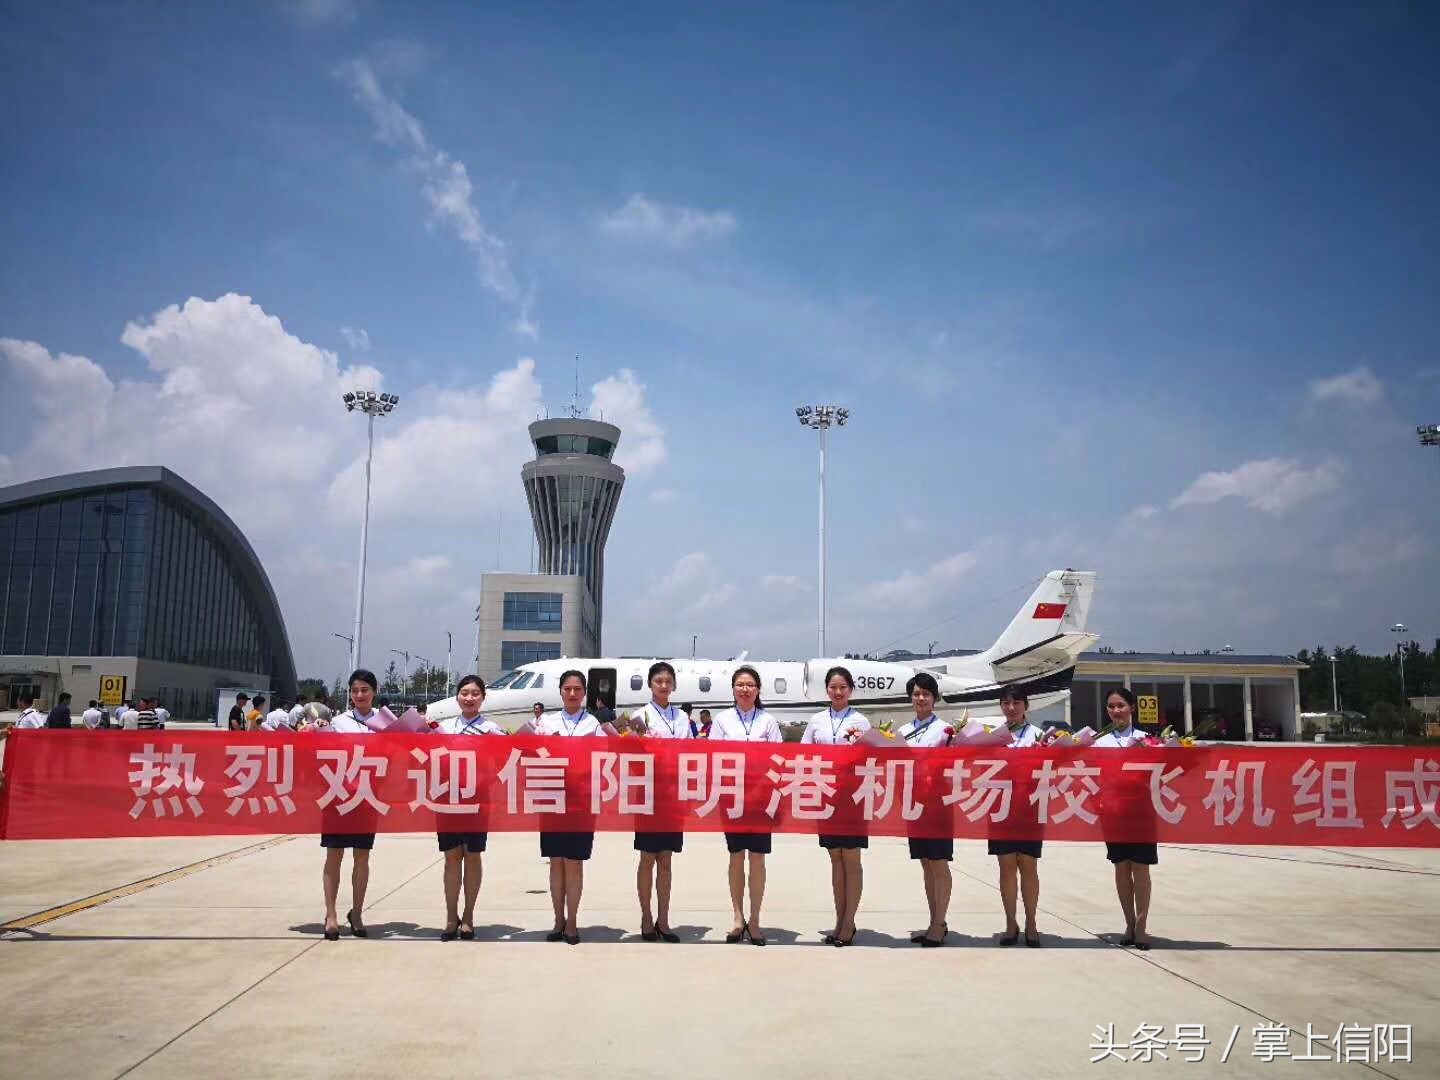 高清图集:信阳明港机场今日试飞,让800万信阳